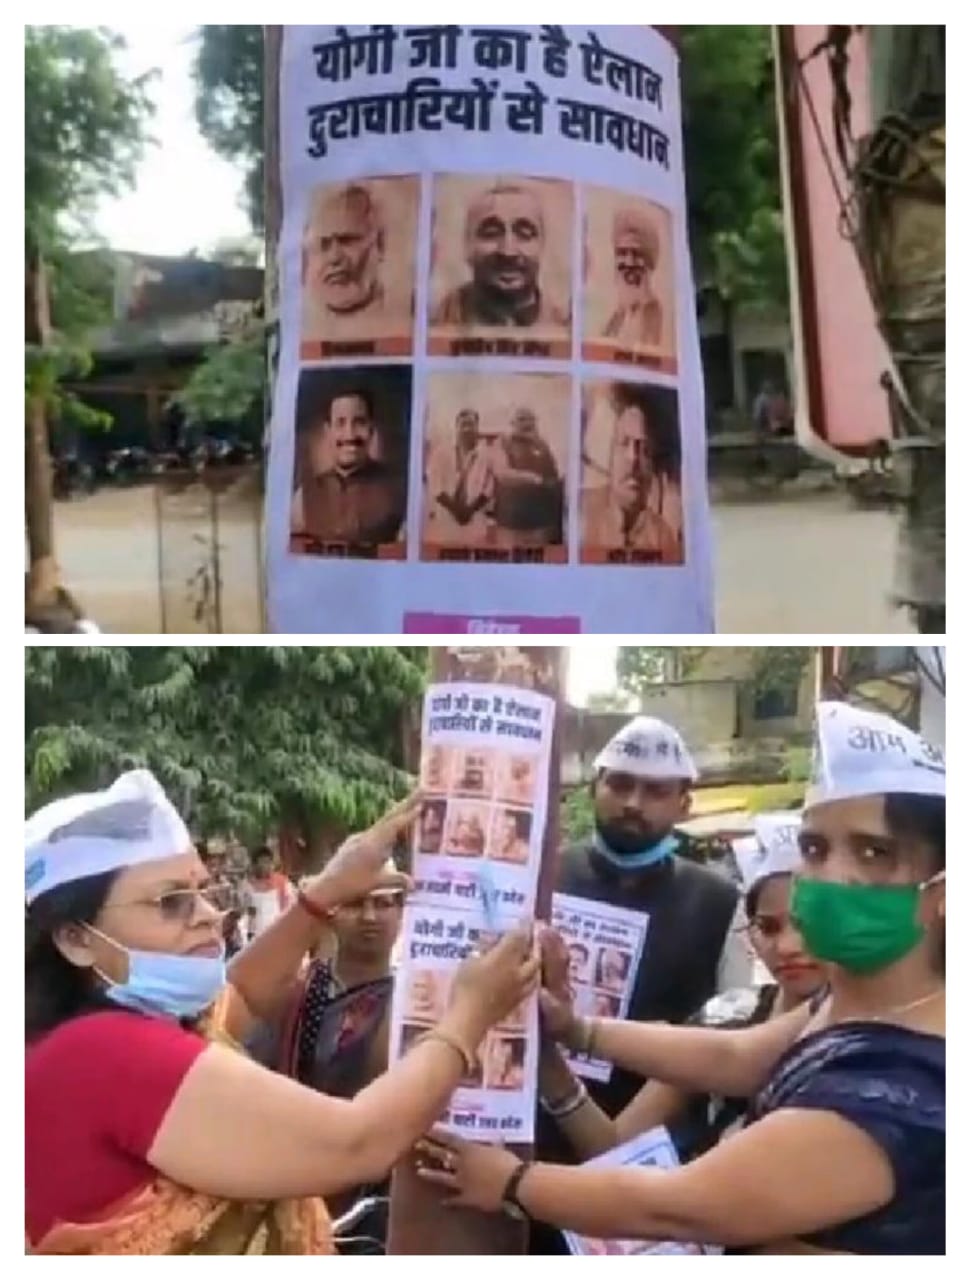 मिर्जापुर जिले के भरुहना चौराहे पर आम आदमी पार्टी के कार्यकर्ताओं ने लगाया बी जे पी नेताओ का पोस्टर।